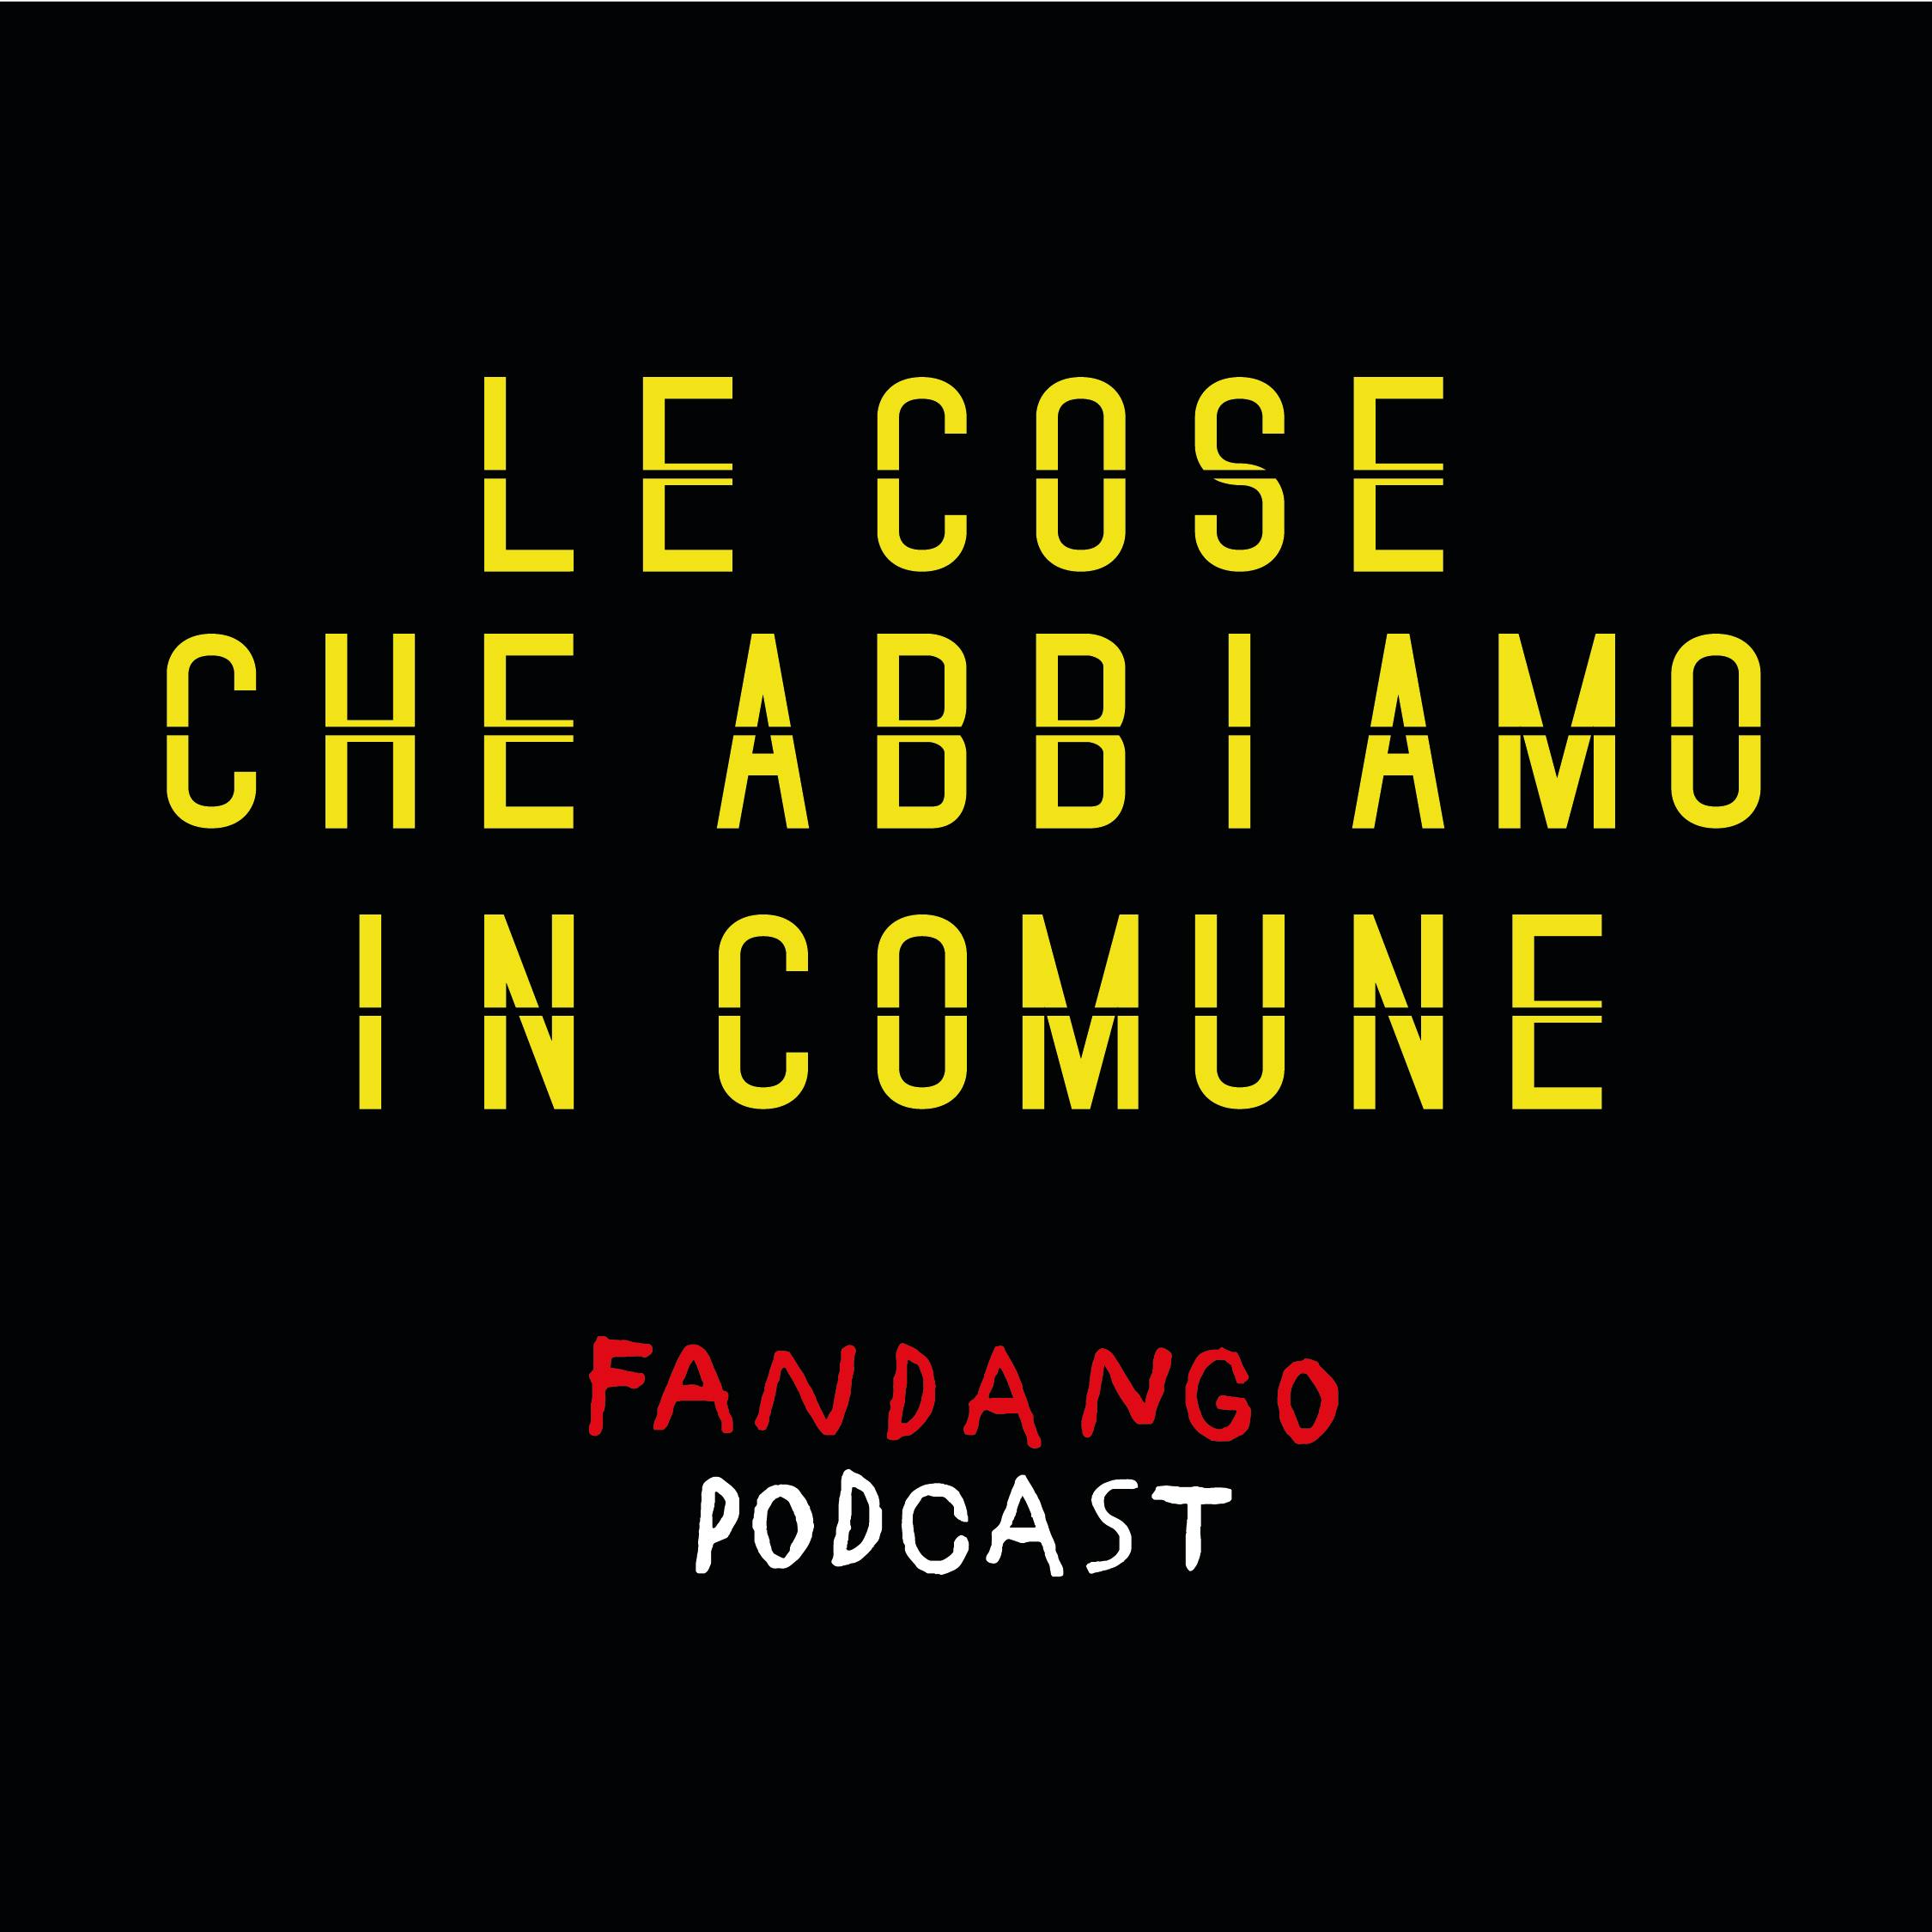 4860: Rancore | Le cose che abbiamo in comune, un podcast di Daniele Silvestri.